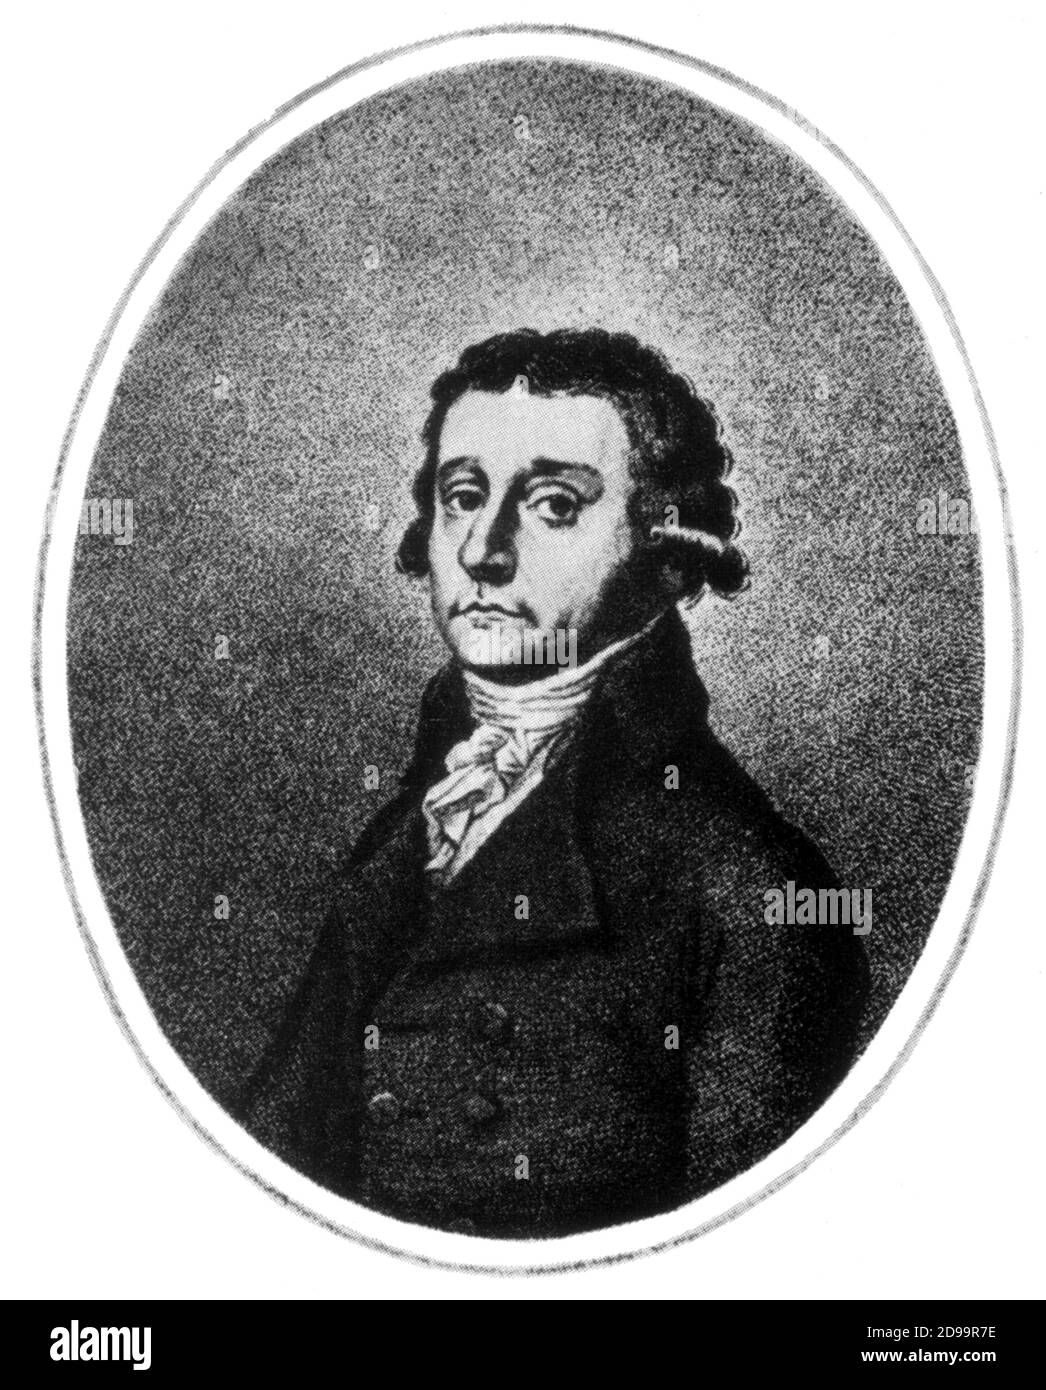 Der italienische Musikkomponist ANTONIO SALIERI ( 1750 - 1825 ) , berühmter Rivale von Amadeus Mozart , Lehrer von Beethoven , Schubert und Liszt - COMPOSITORE - MUSICA CLASSICA - Klassik - Musikista - musica barocca - barocco - Barock - Krawatte - Cravatta - Parrucca - Perücke - Portrait - ritratto ---- Archivio GBB Stockfoto